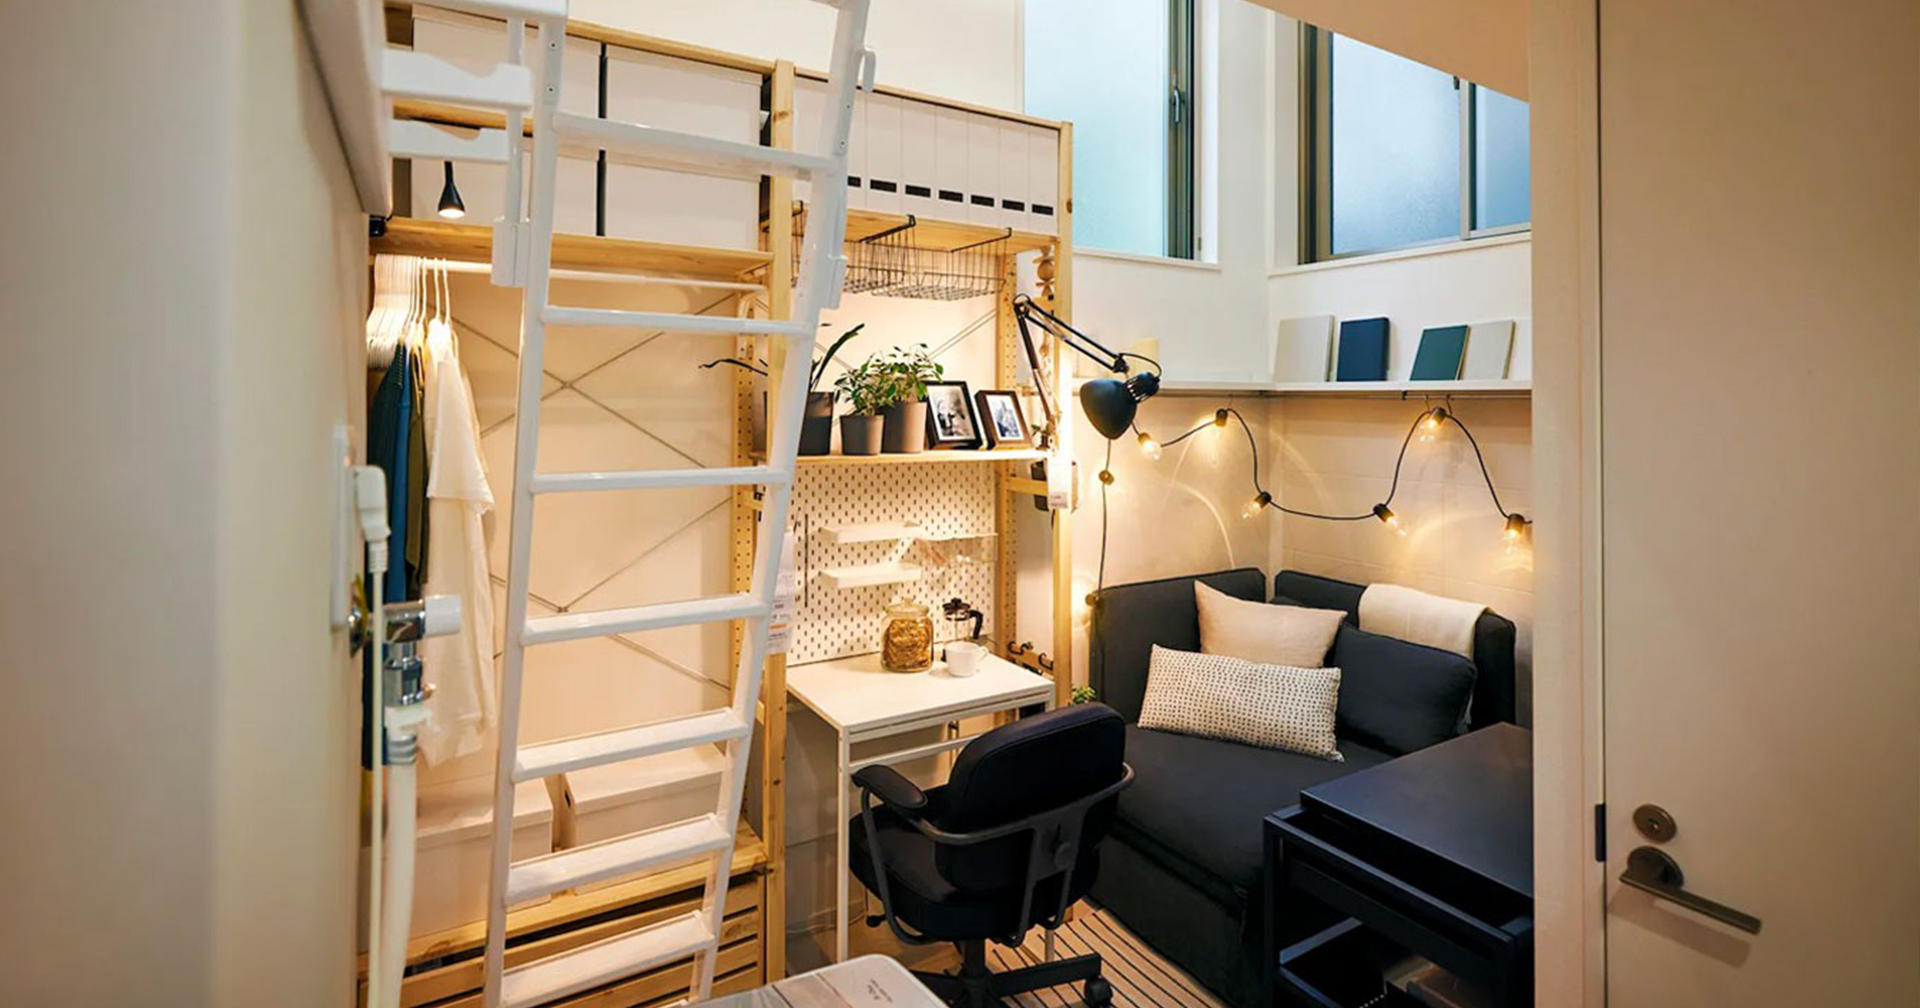 IKEA เปิดตัว ‘ห้องเช่า’ พร้อมอยู่ในโตเกียว ราคาเดือนละ 32 บาท